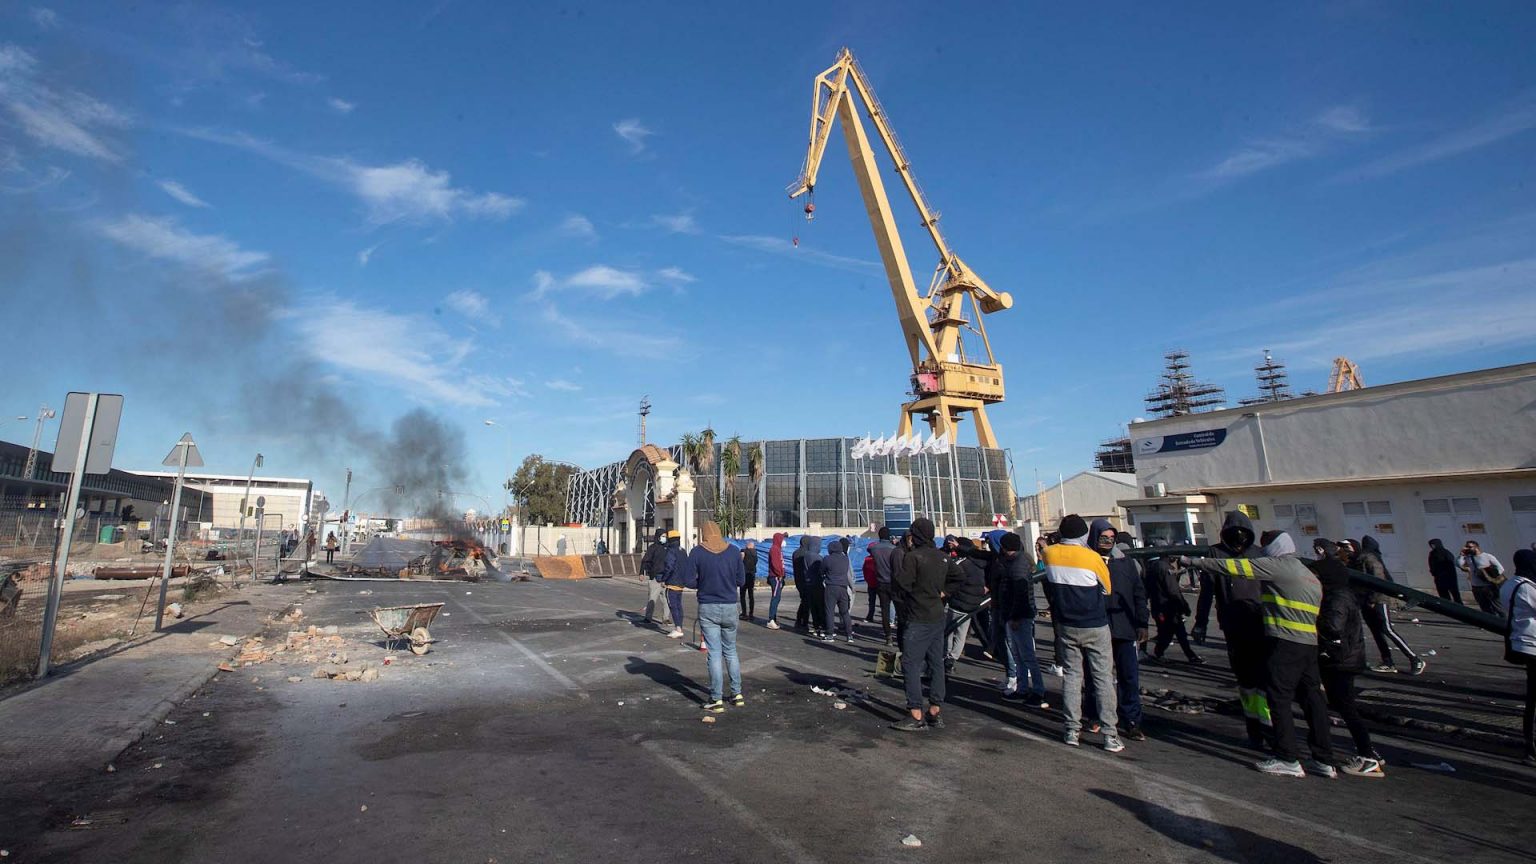 Patronal y sindicatos del metal de Cádiz no logran acuerdo y la huelga sigue